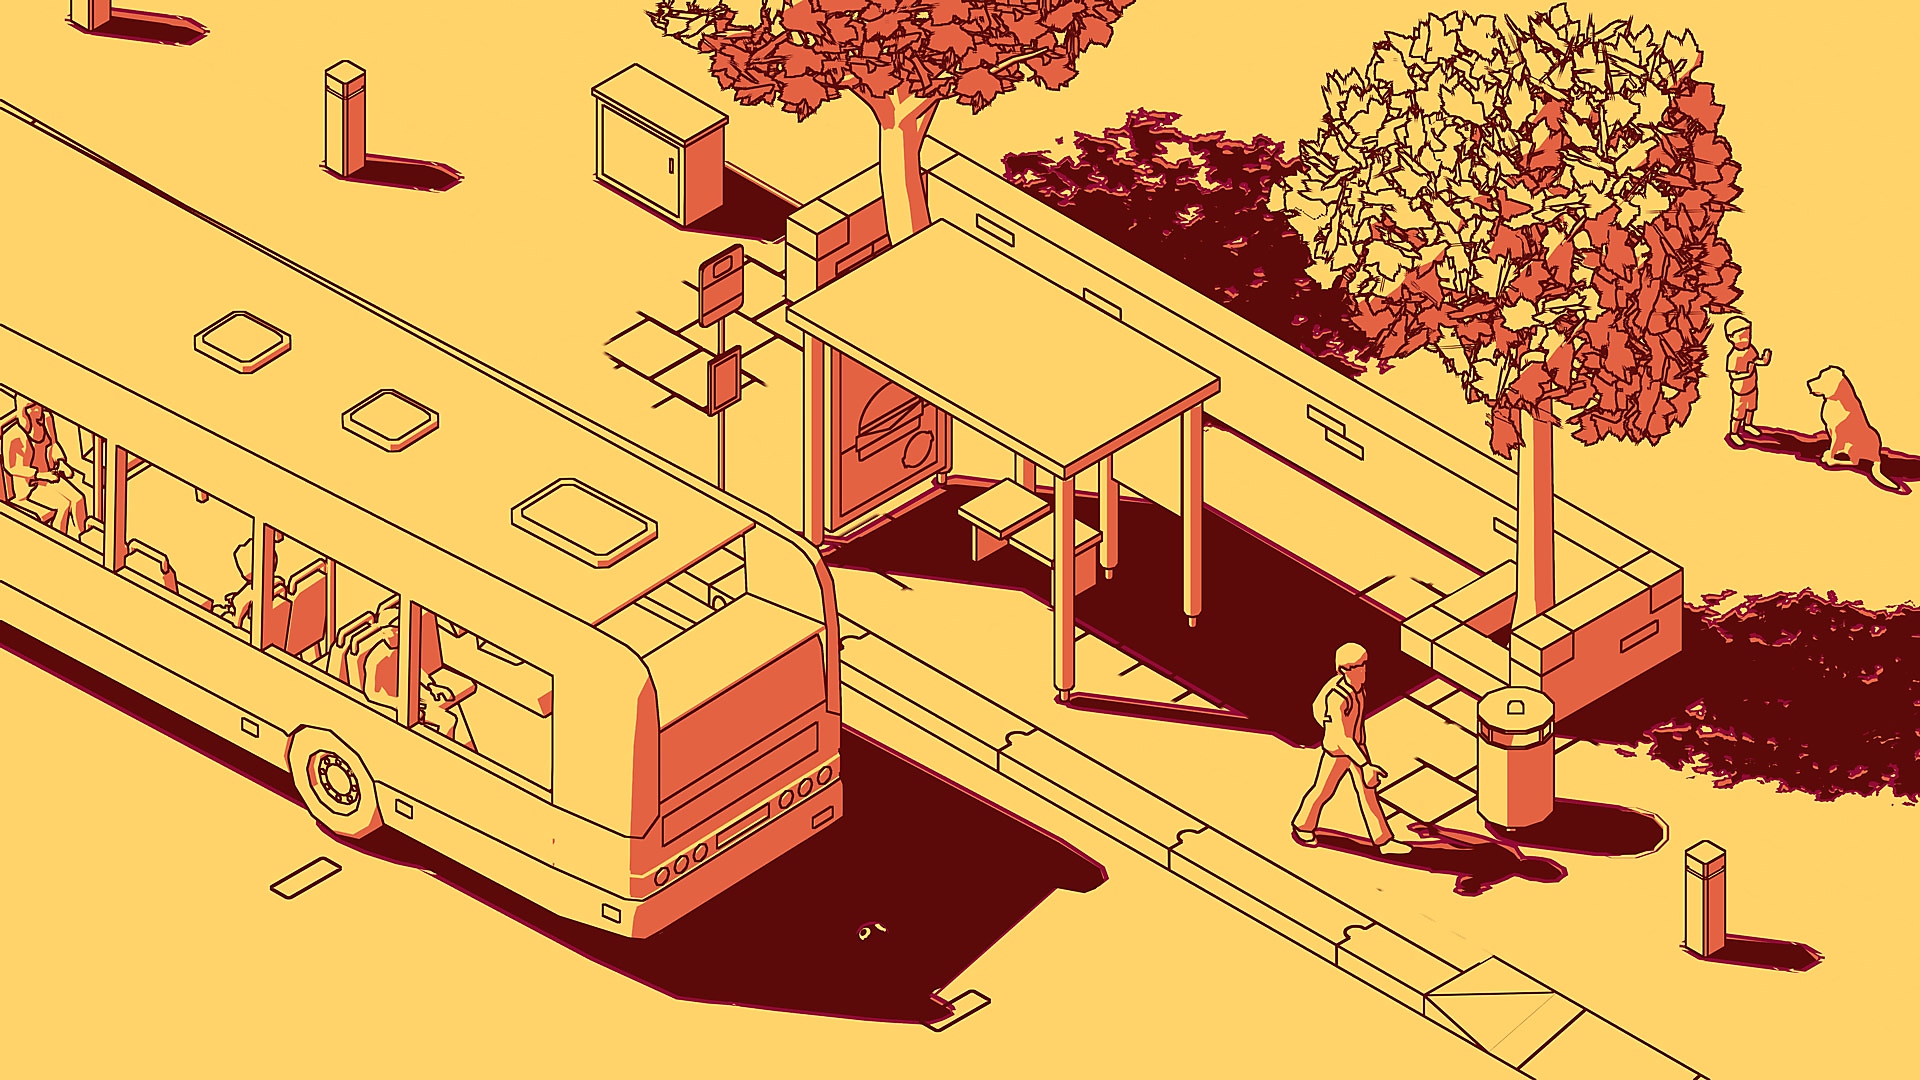 Survior – skärmbild som visar en gul scen med en buss som stannat vid en busshållplats